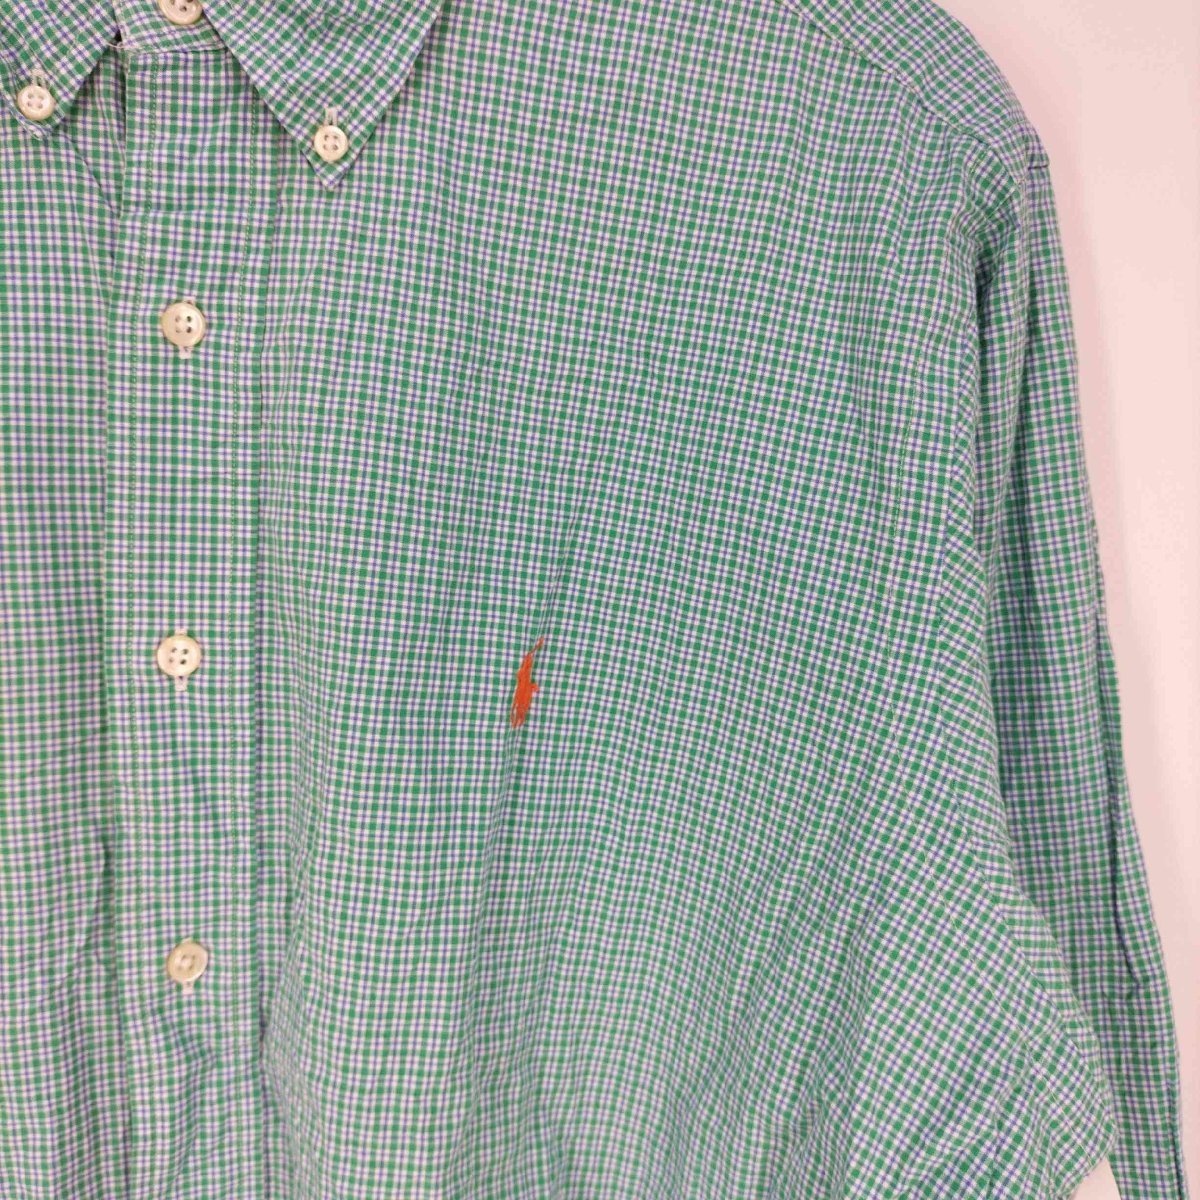 RALPH LAUREN(ラルフローレン) CLASSIC FIT ポニー刺繍 ボタンダウンチェックシャツ 中古 古着 0412_画像5